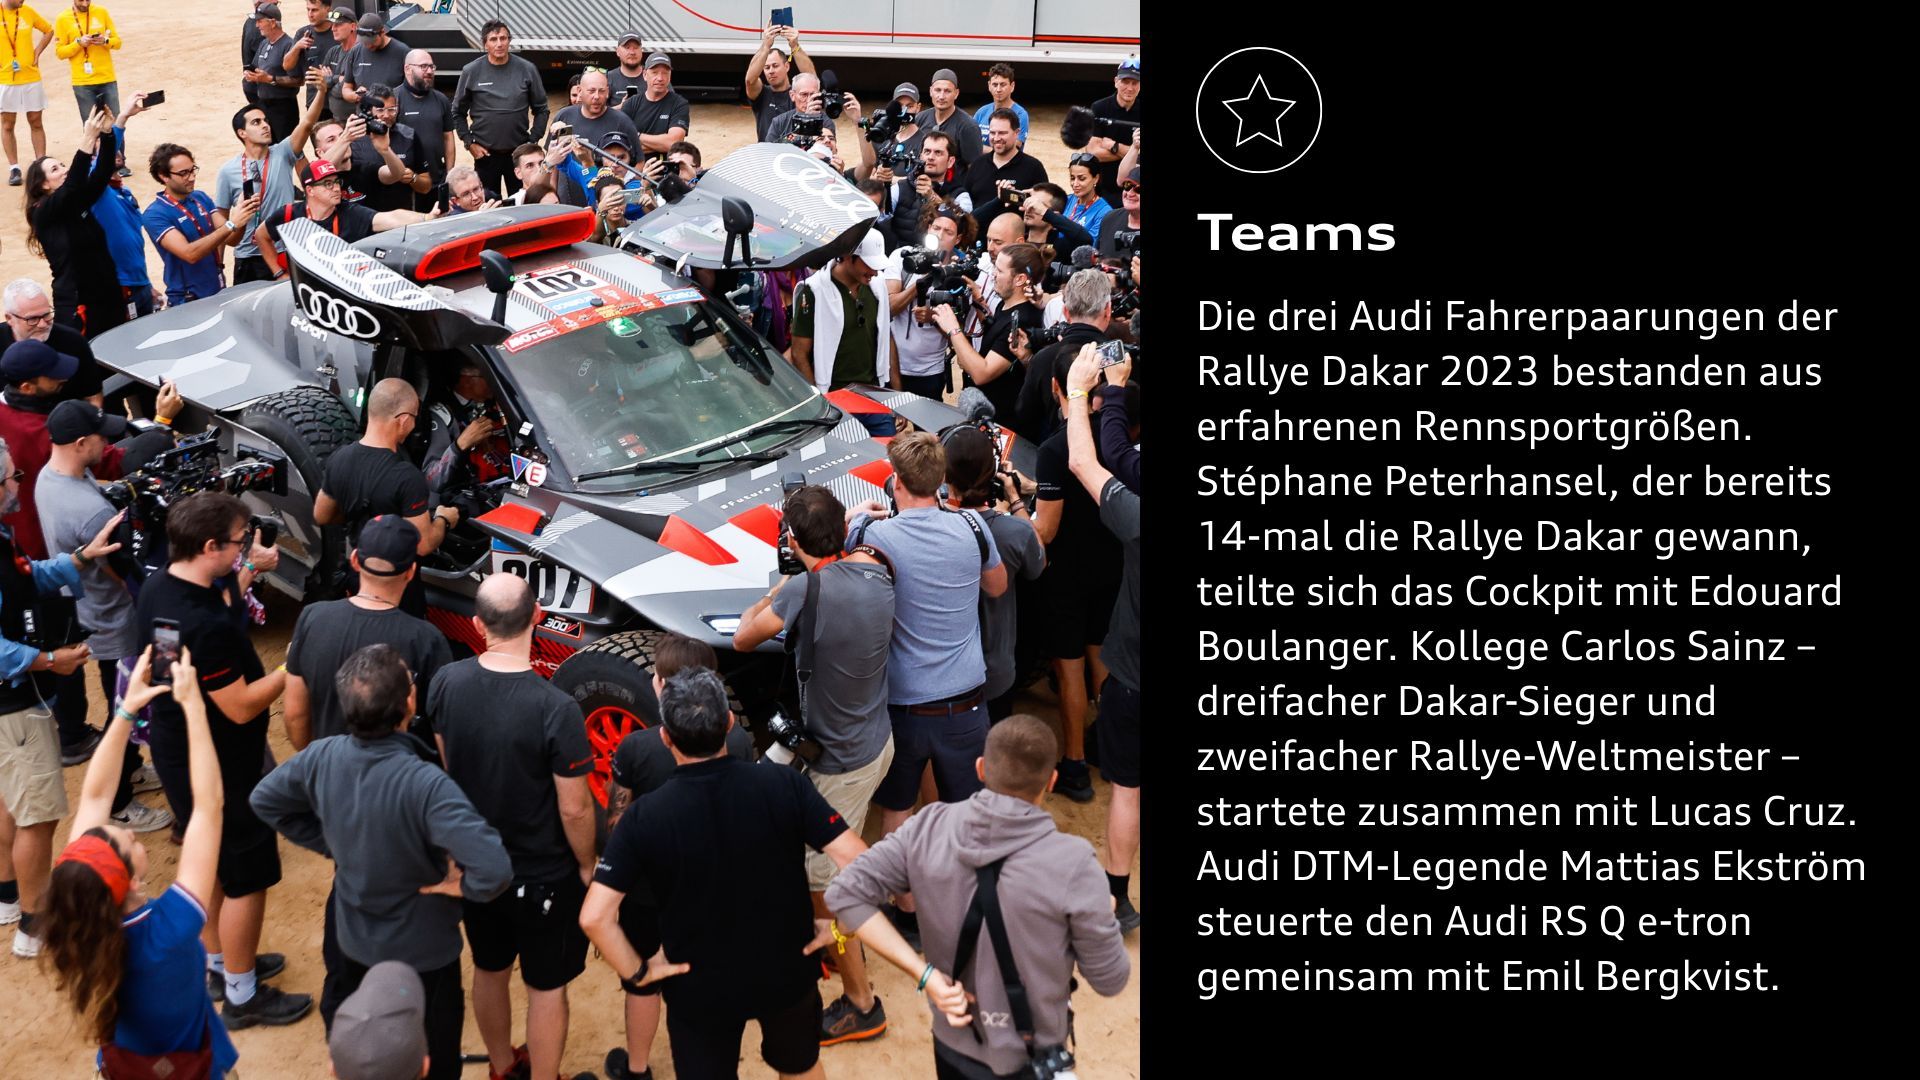 Erfolge: Die drei Audi Fahrerpaarungen der Rallye Dakar 2023 bestanden aus erfahrenen Rennsportgrößen. Stéphane Peterhansel, der bereits 14-mal die Rallye Dakar gewann, teilte sich das Cockpit mit Edouard Boulanger. Kollege Carlos Sainz – dreifacher Dakar-Sieger und zweifacher Rallye-Weltmeister – startete zusammen mit Lucas Cruz. Audi DTM-Legende Mattias Ekström steuerte den Audi RS Q e-tron gemeinsam mit Emil Bergkvist.